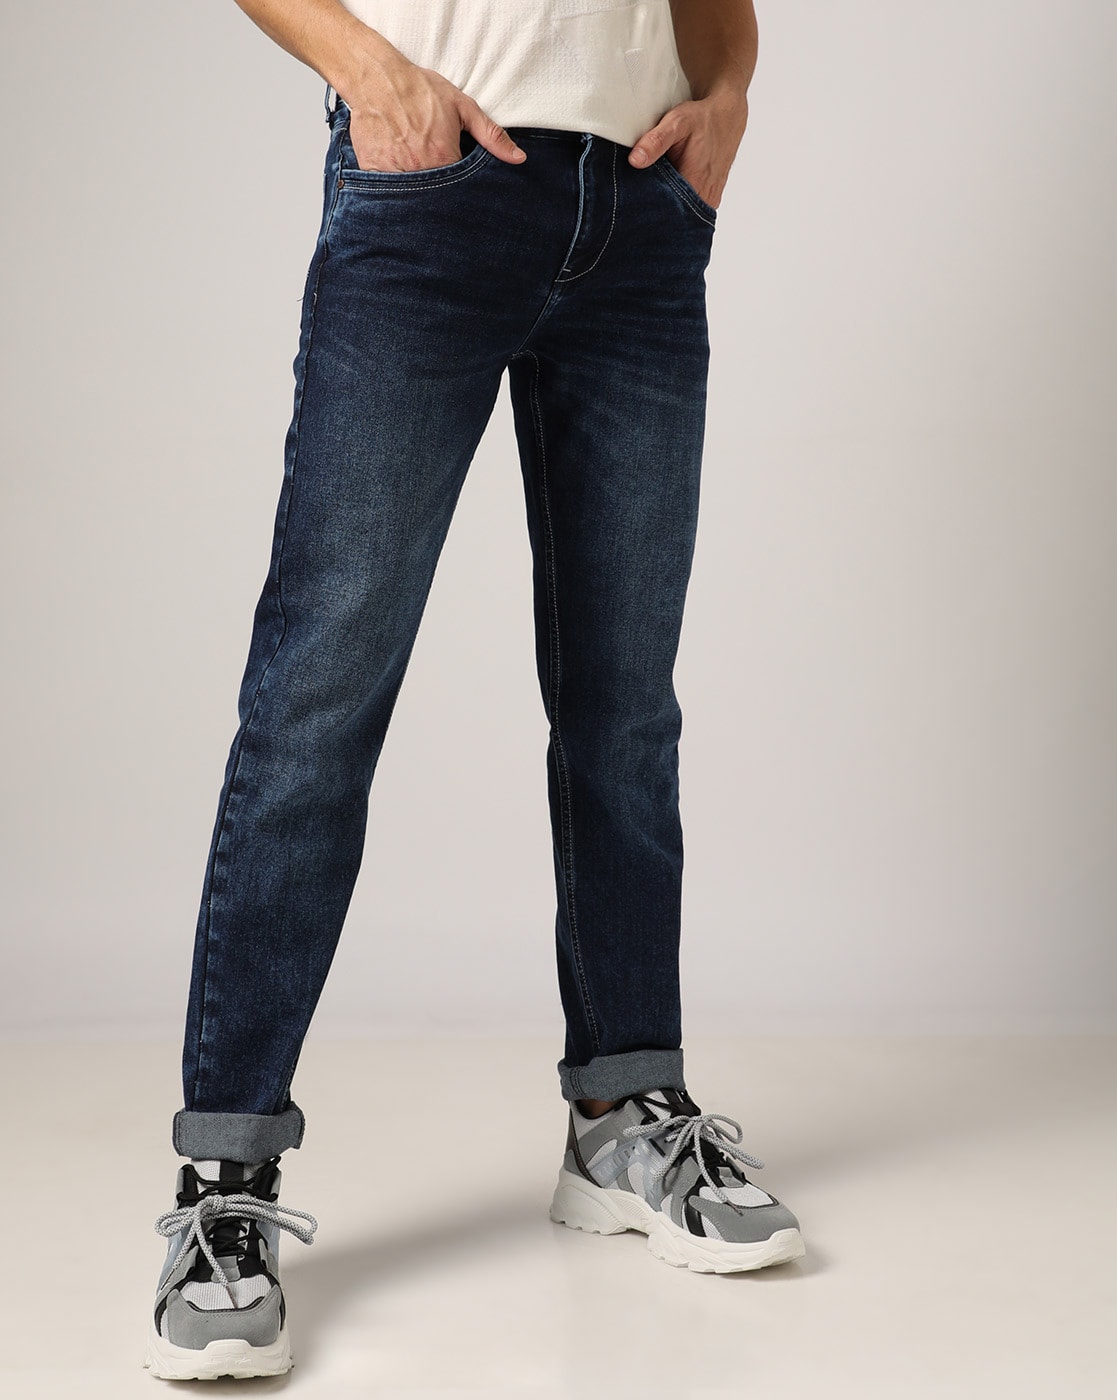 To grader Hjælp Anemone fisk Buy Blue Jeans for Men by Buda Jeans Co Online | Ajio.com